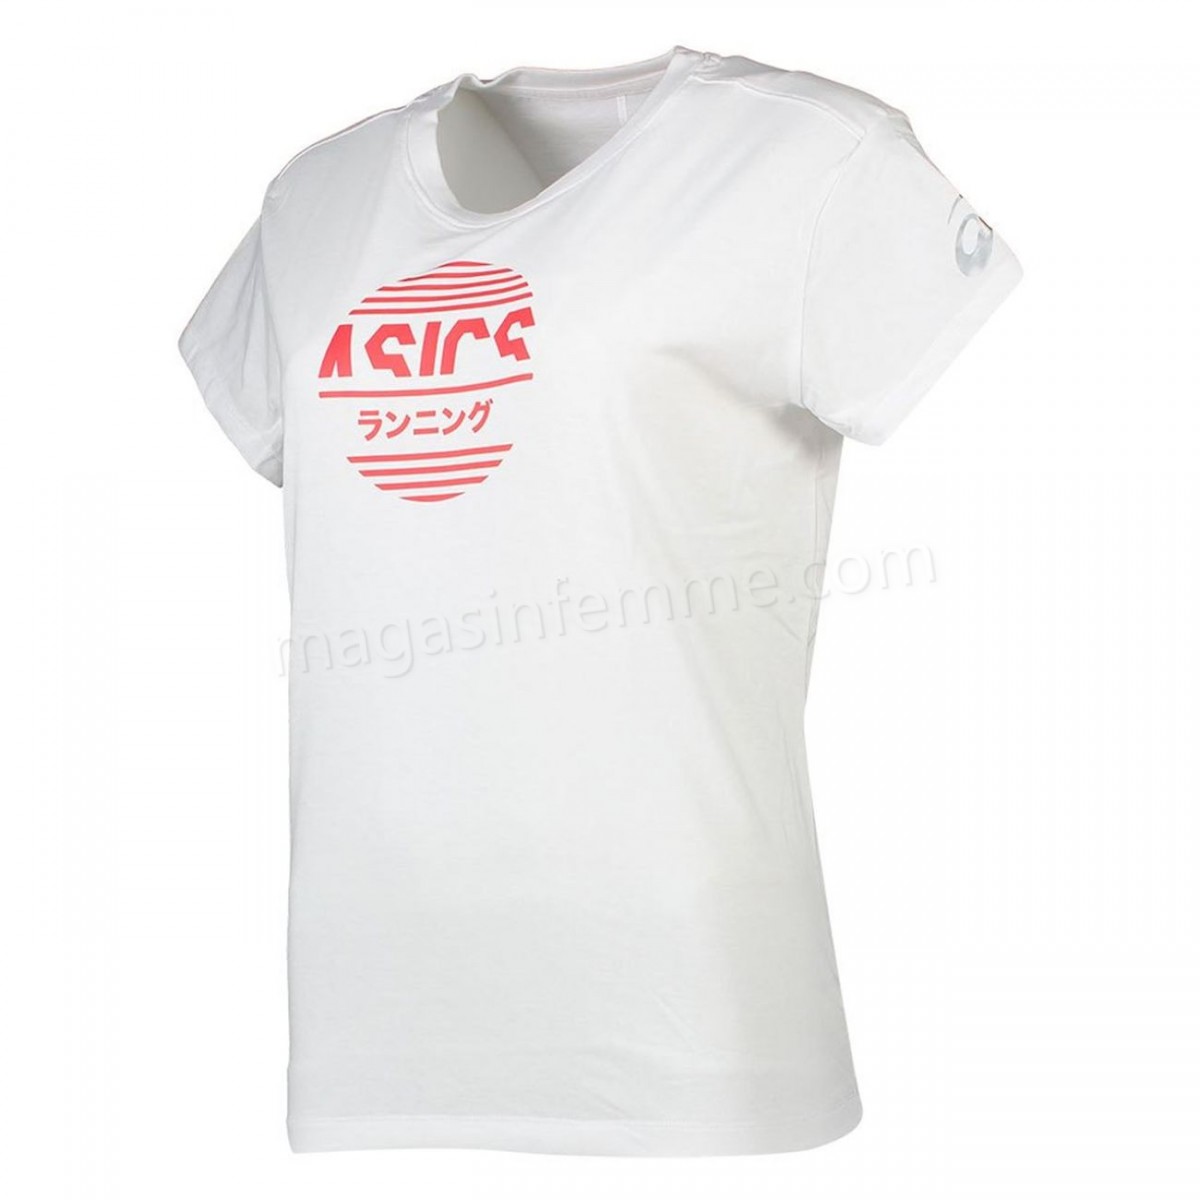 Asics-Fitness femme ASICS T-shirt femme Asics Tokyo Graphic en solde - -1